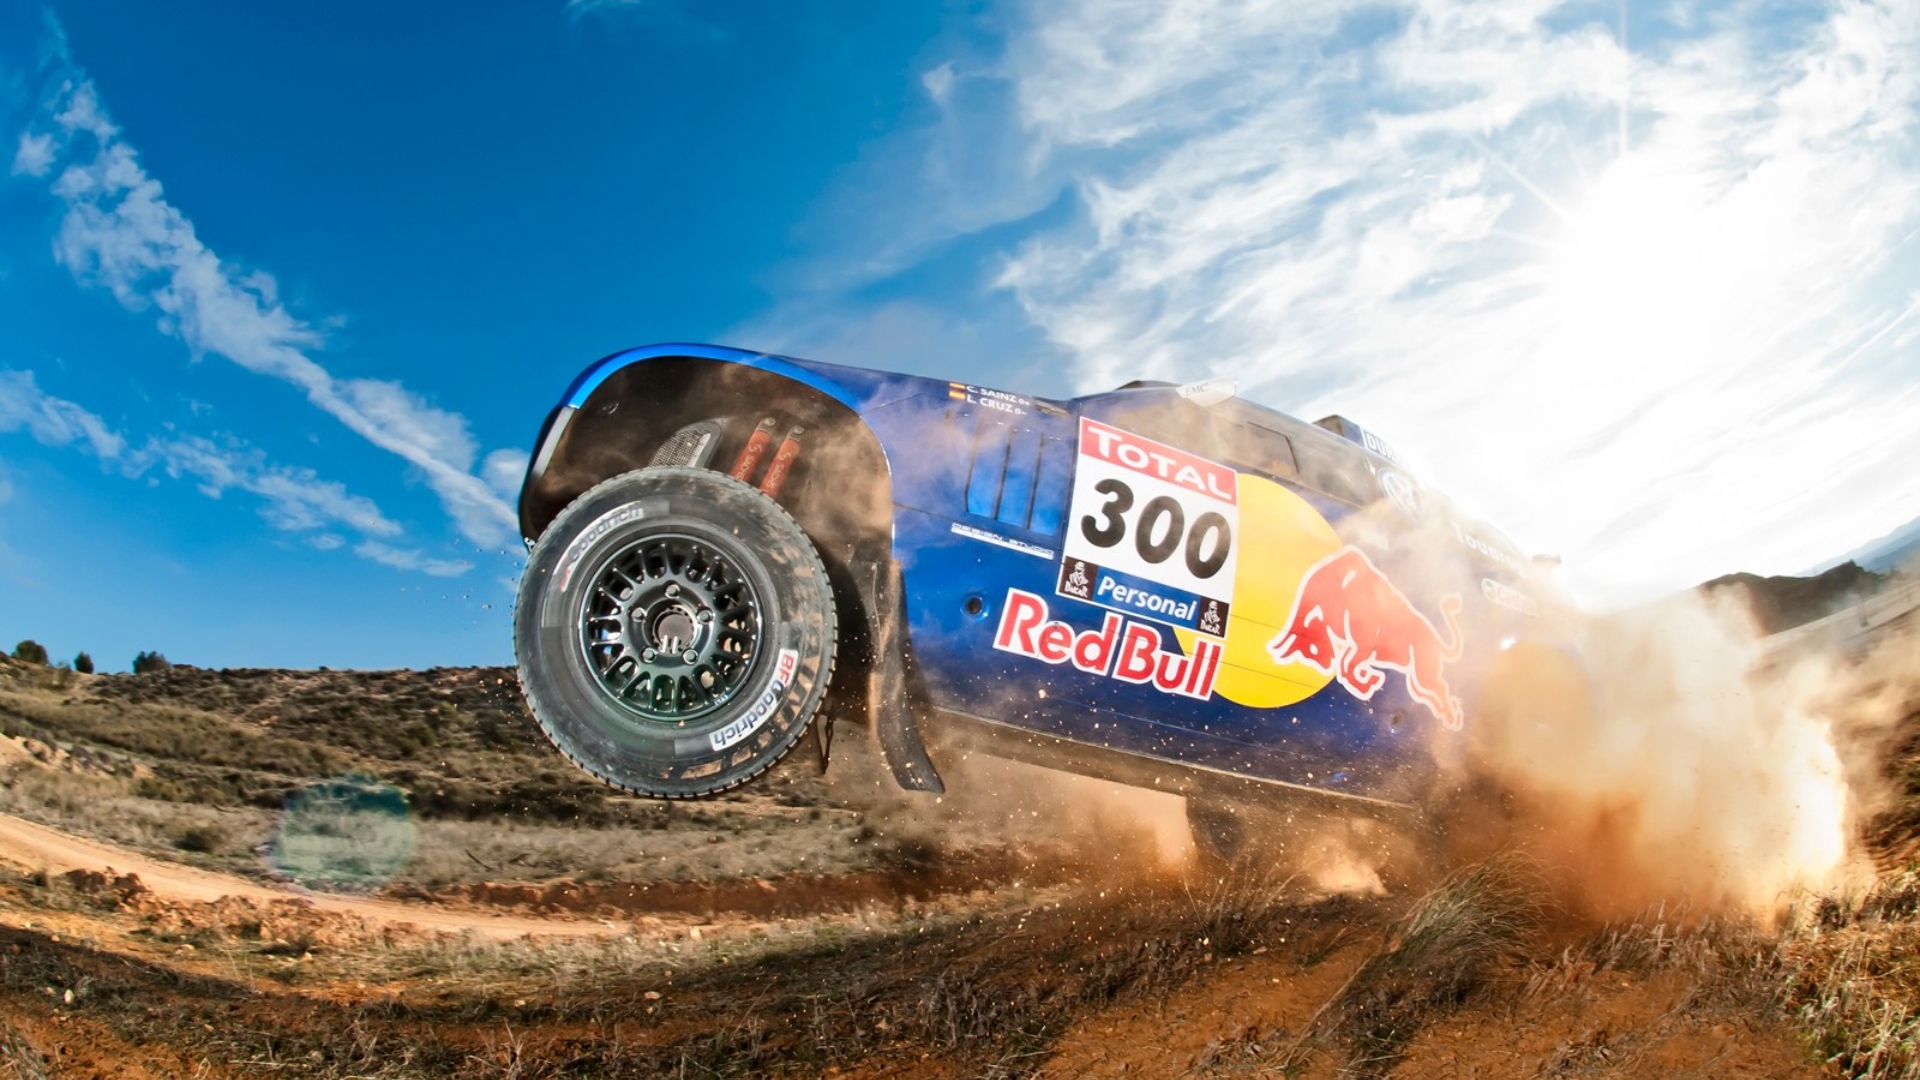 Volkswagen Dakar Race for 1920 x 1080 HDTV 1080p resolution